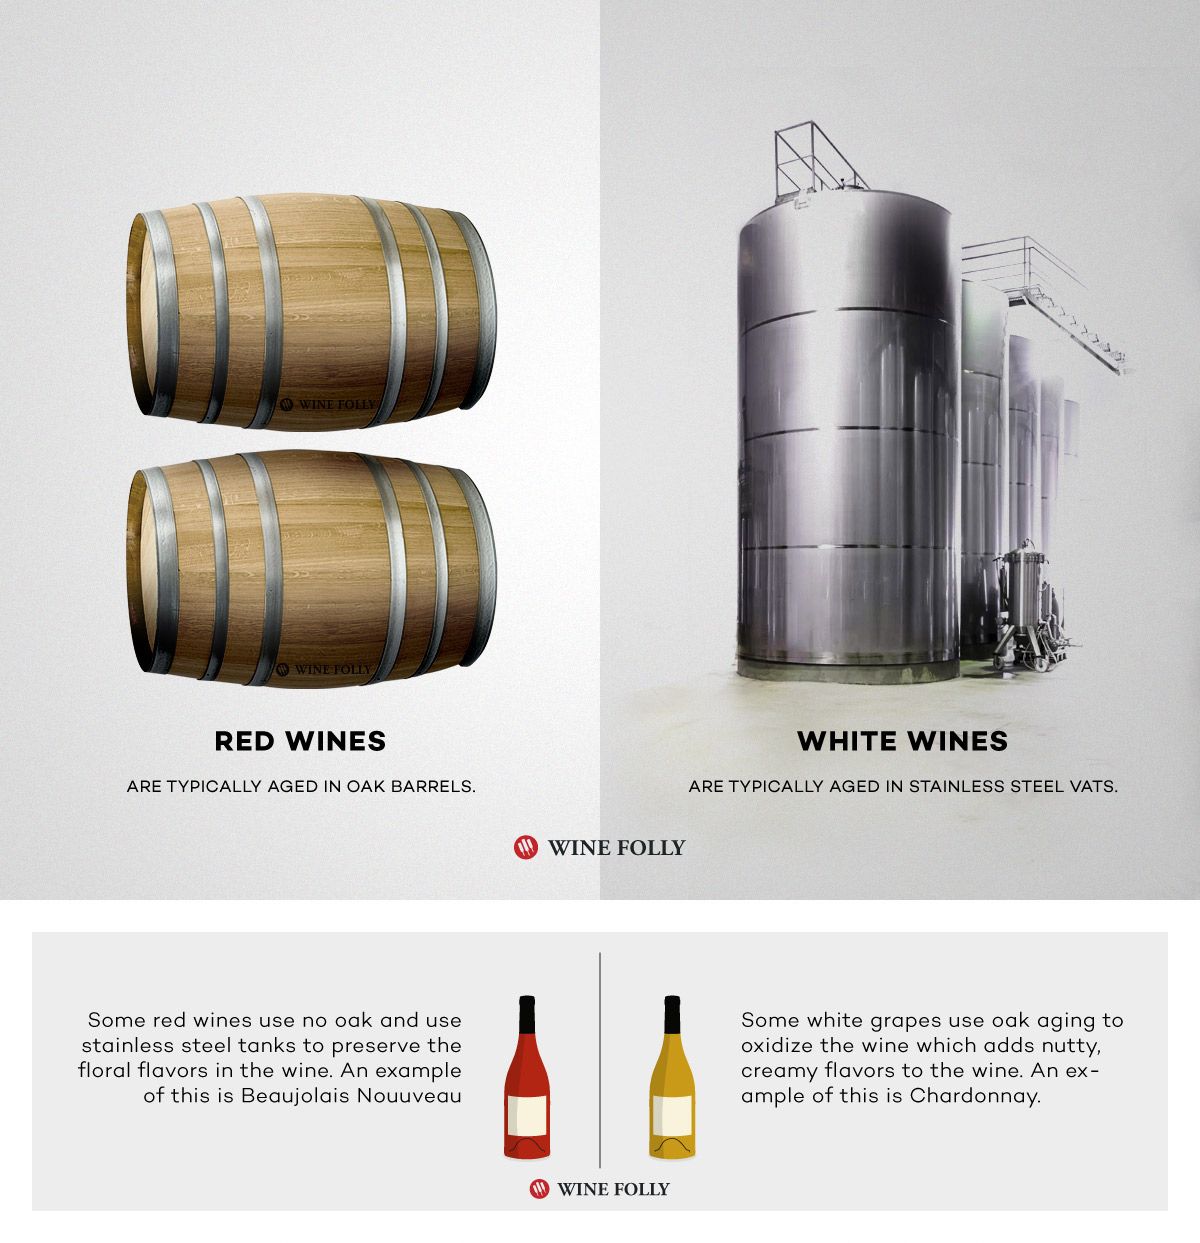 יין אדום לעומת יין לבן מיושן בצורה שונה מנירוסטה לעומת יישון חביות עץ אלון על ידי היין האיוולת